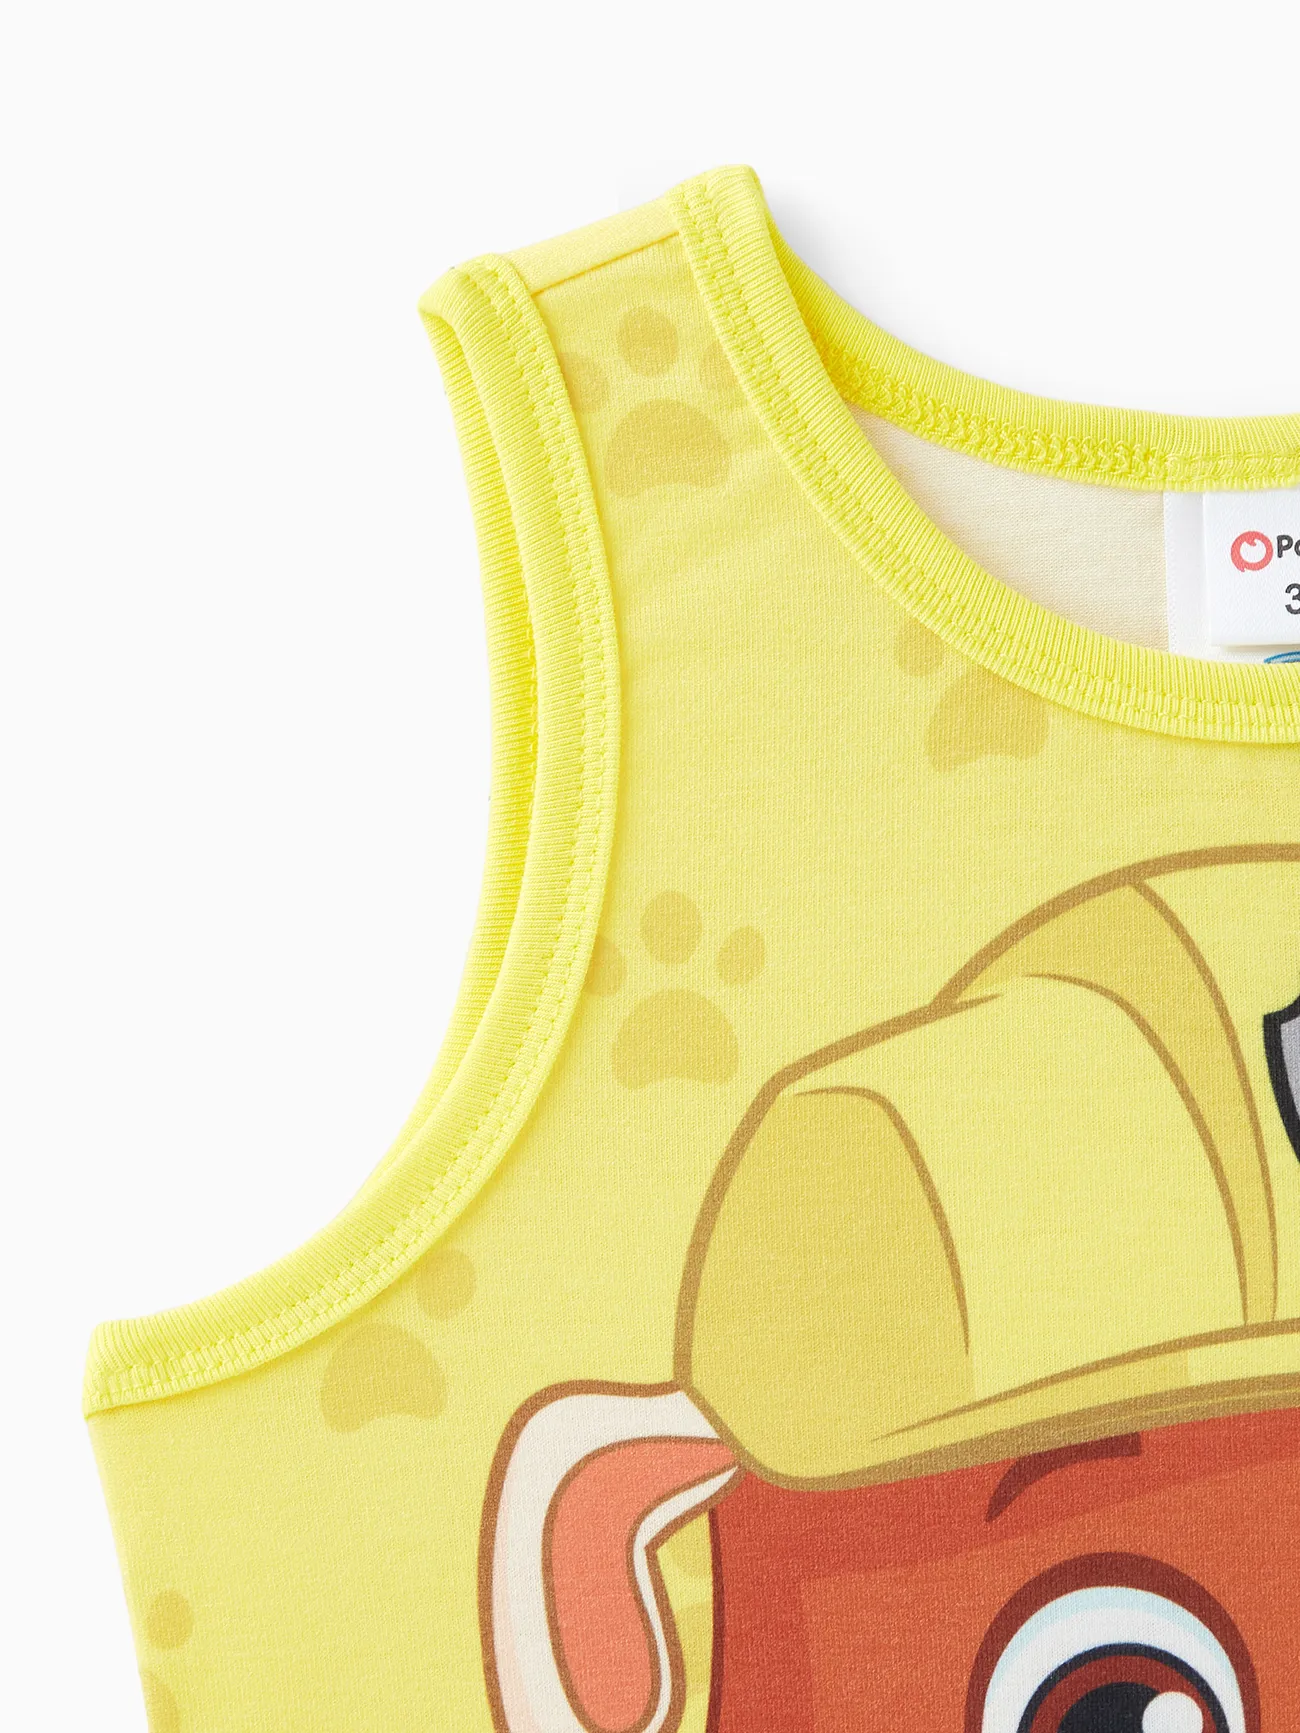 PAW Patrol Toddler Boy Character Print Naia™ Tank Top Yellow big image 1